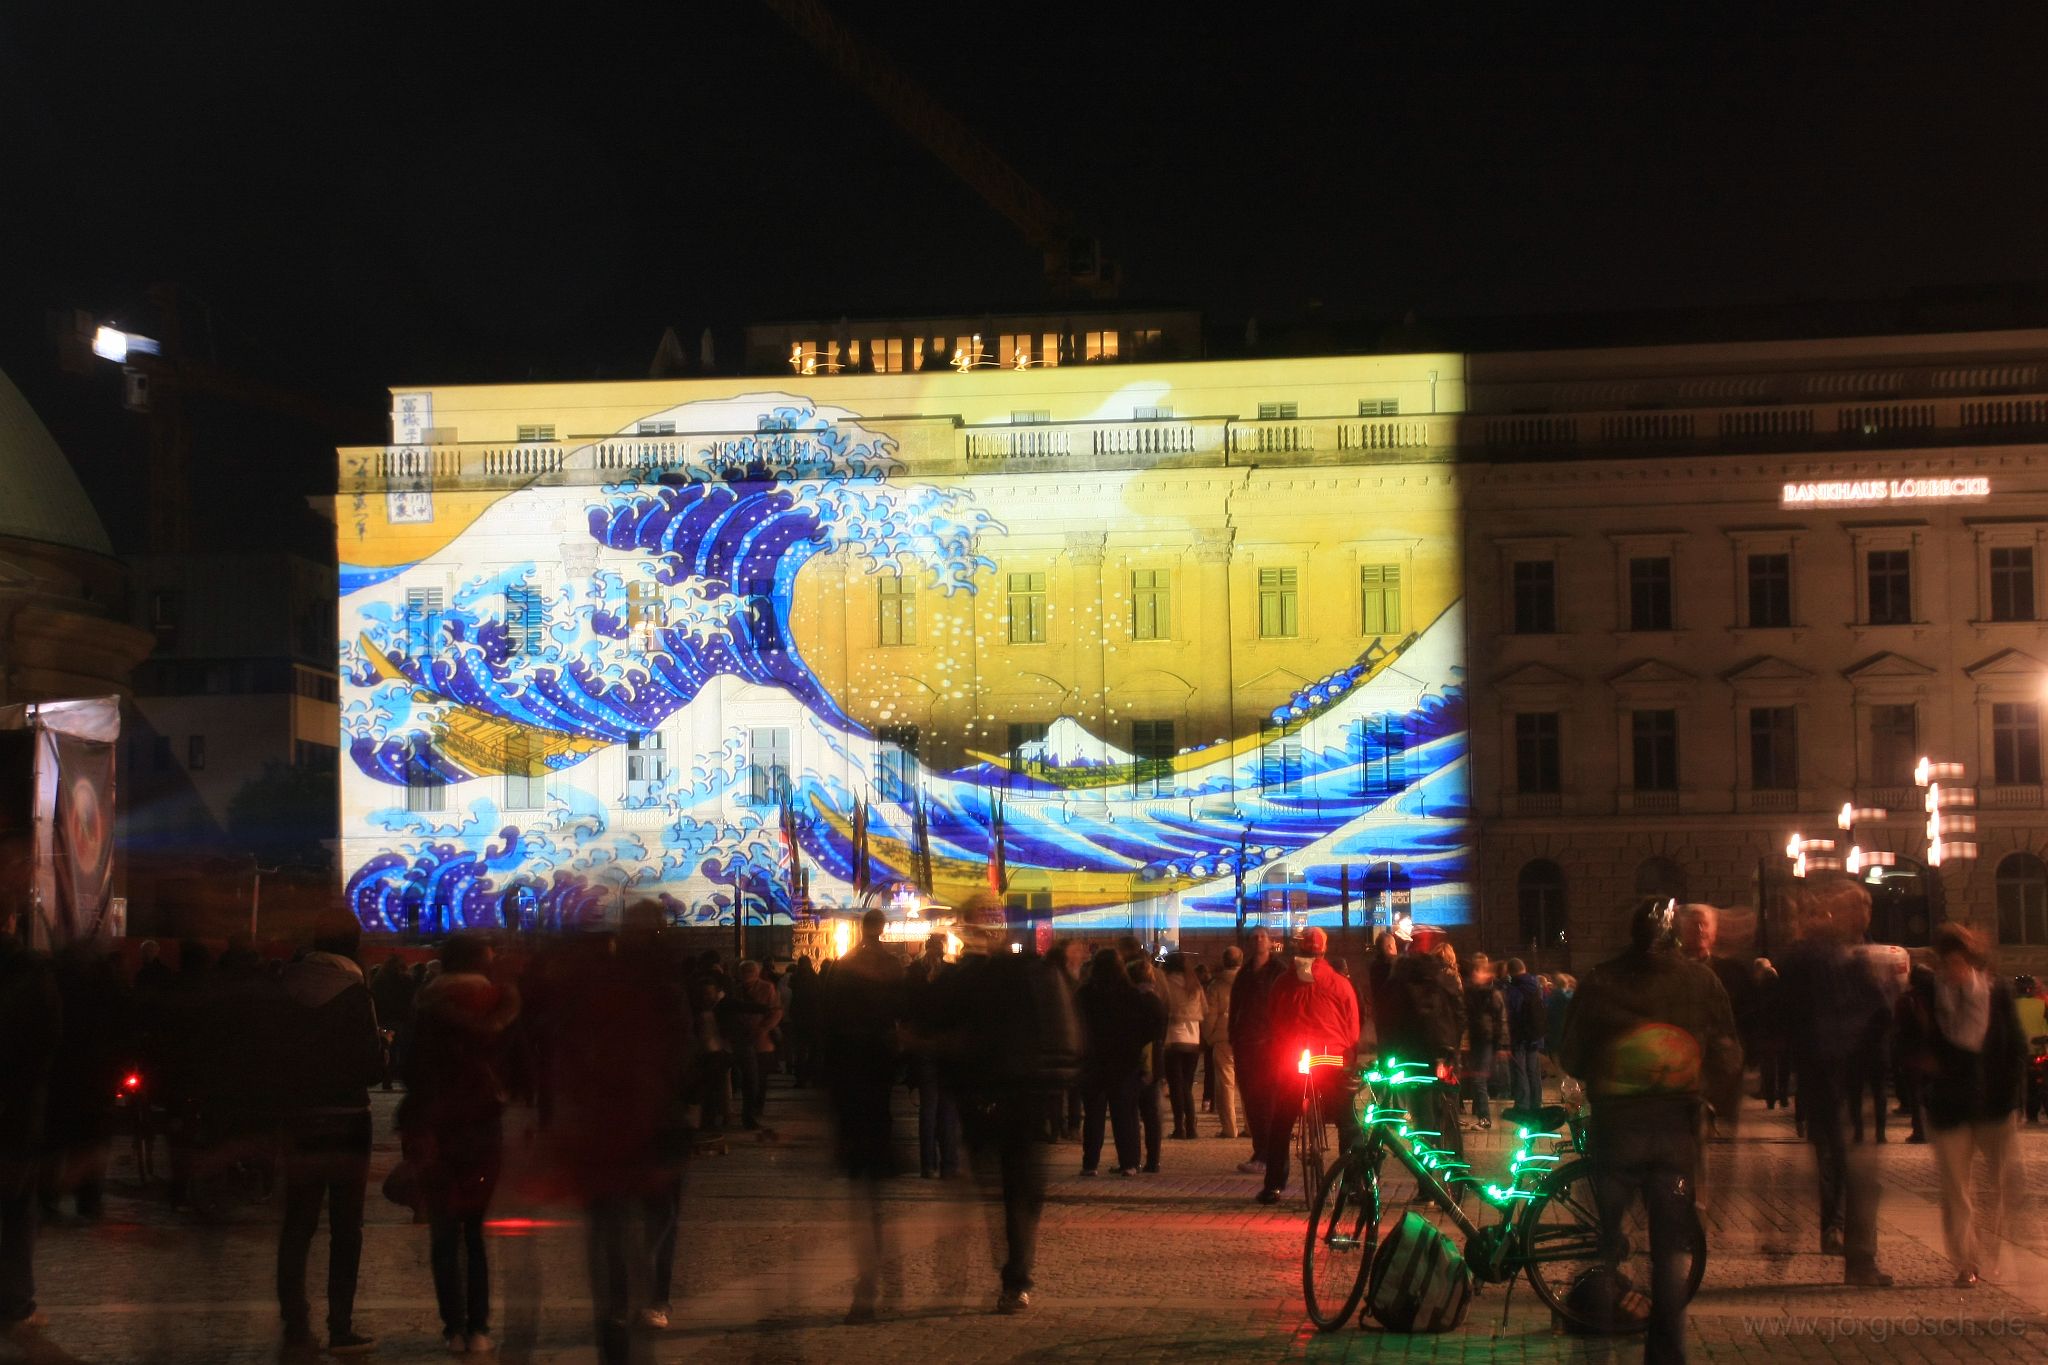 20131013-festivaloflights.jpg - 神奈川沖浪裏 am Hotel de Rome zum Festival of Lights am Bebelplatz, Berlin